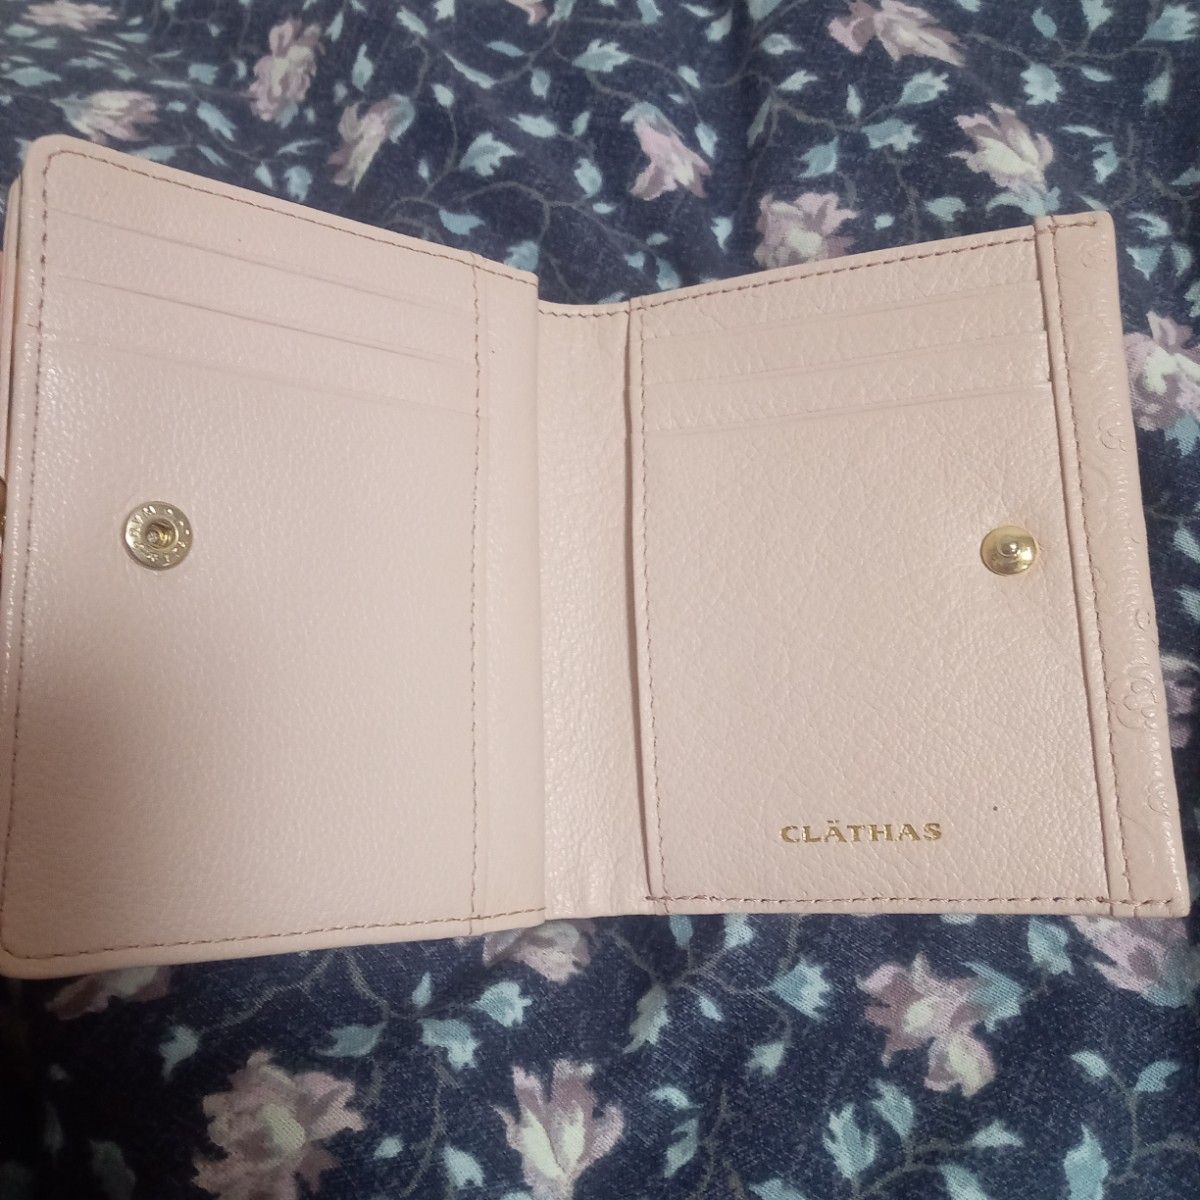 CLATHAS クレイサス 二つ折り財布 ピンク 花柄 合皮 エンボス加工 小さめ財布 